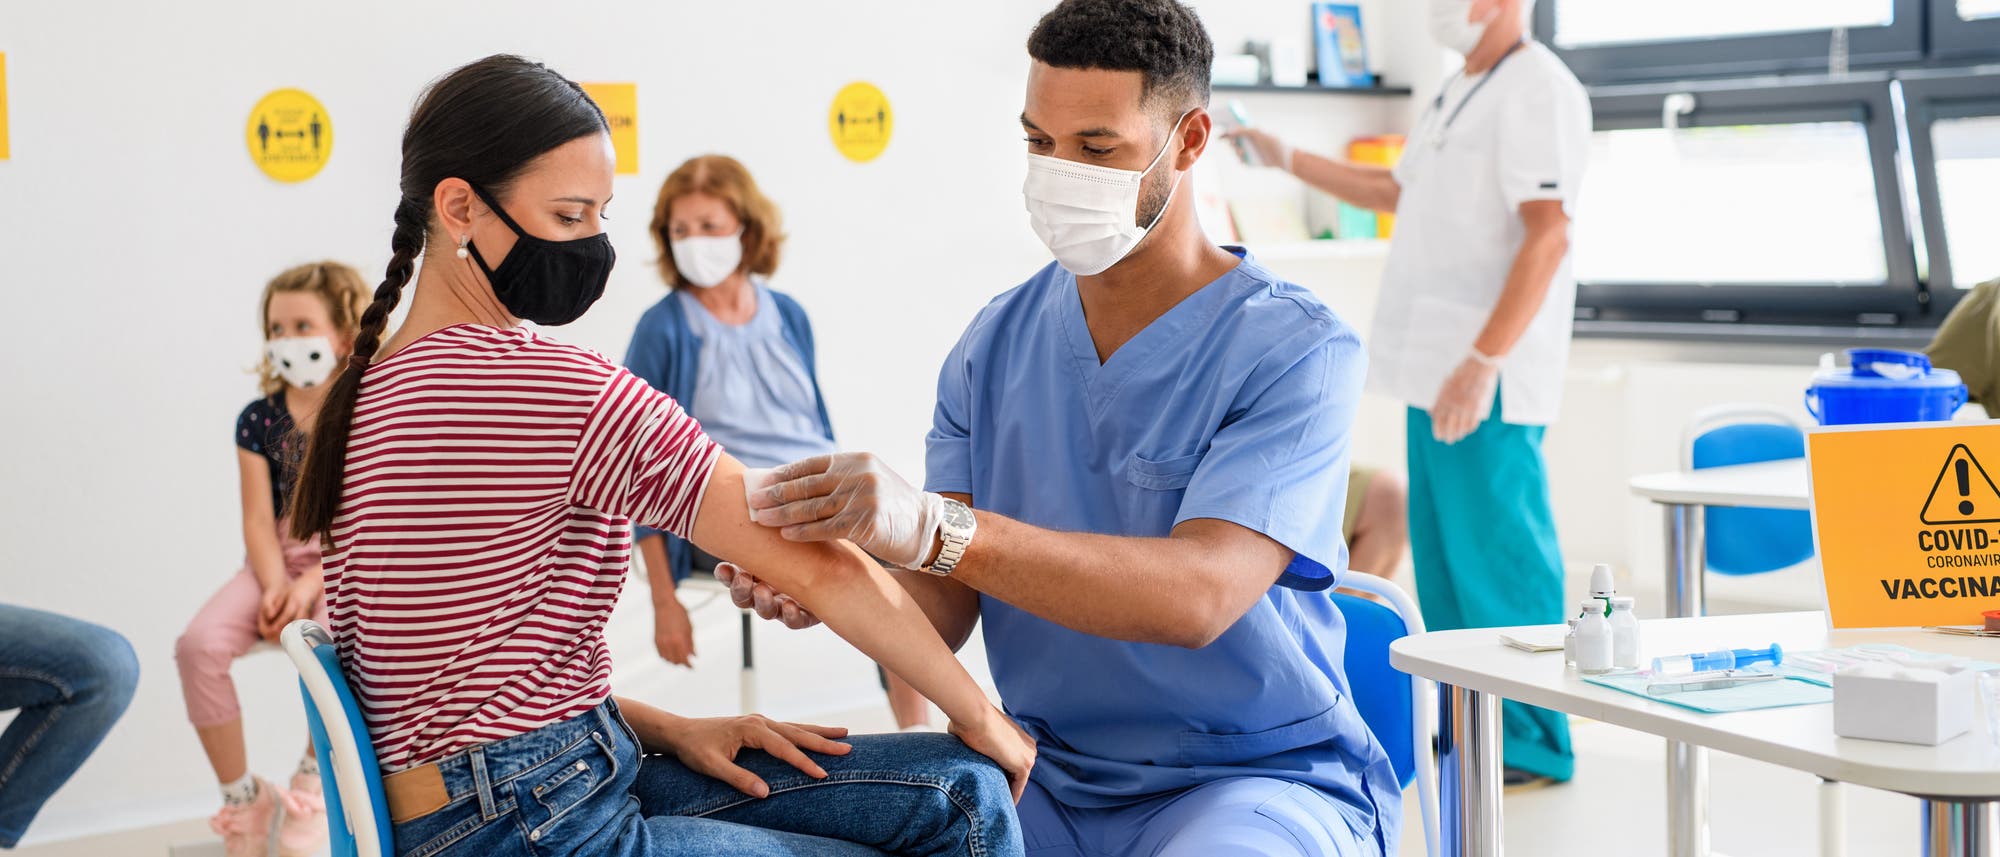 Patientin und Arzt während einer Impfung